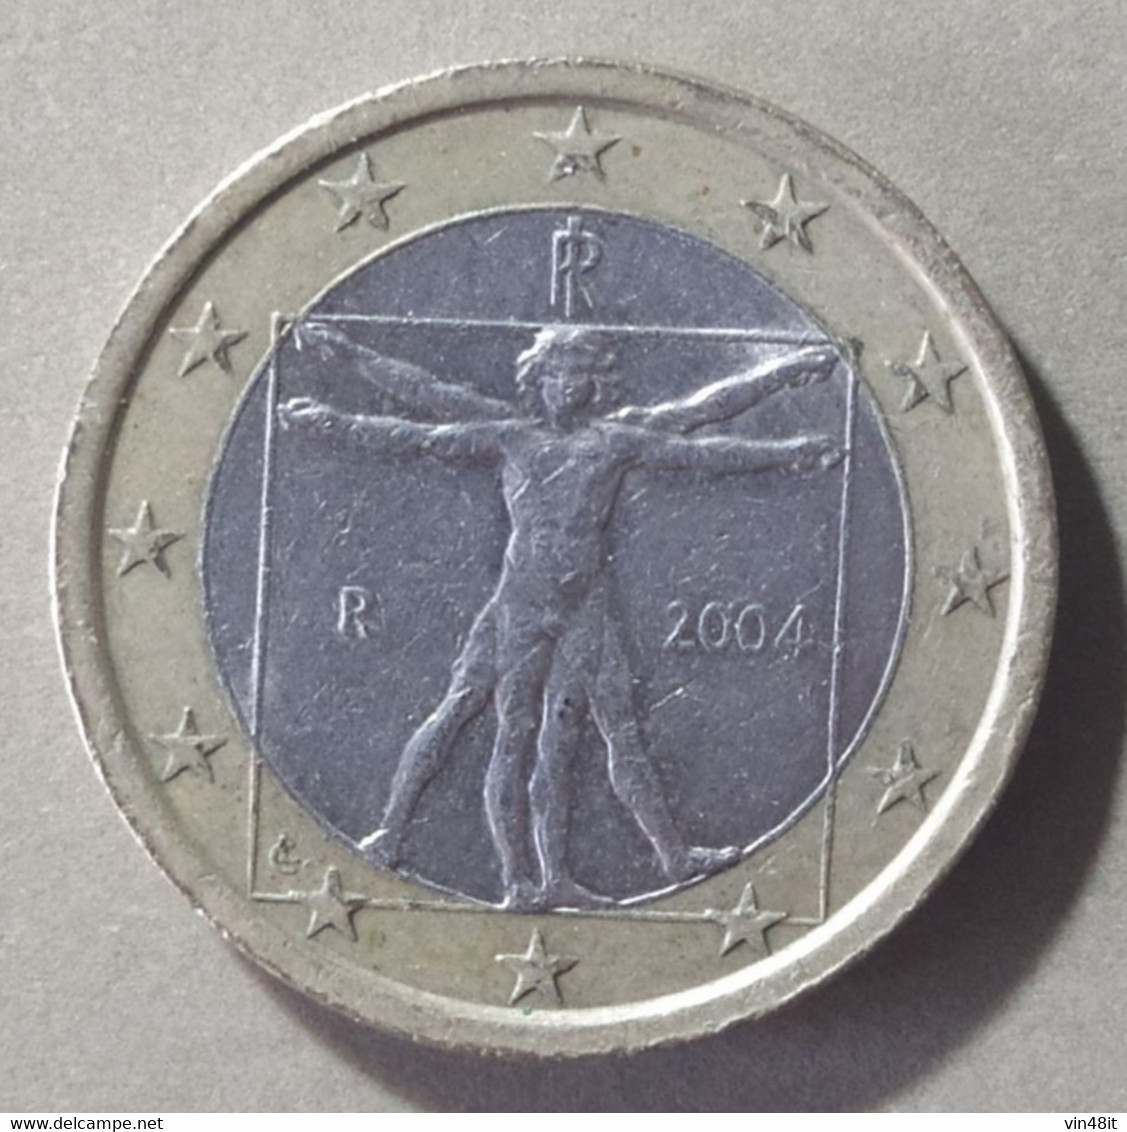 2004 - ITALIA  REPUBBLICA    -  MONETA IN EURO -  DEL VALORE DI 1,00  EURO  - USATA - - Italie